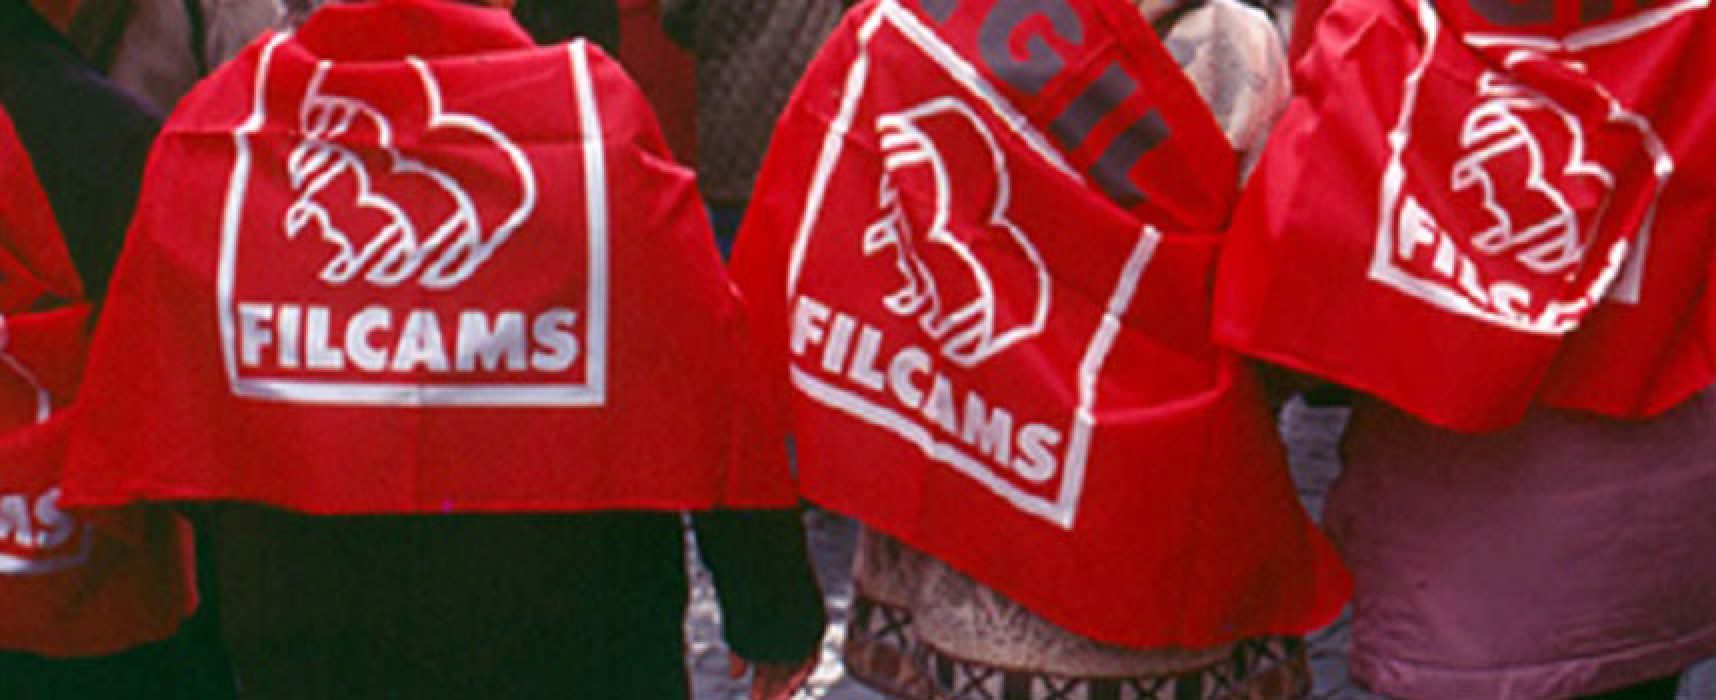 Sosta a pagamento, Filcams comunica sospensione sit-in dei lavoratori